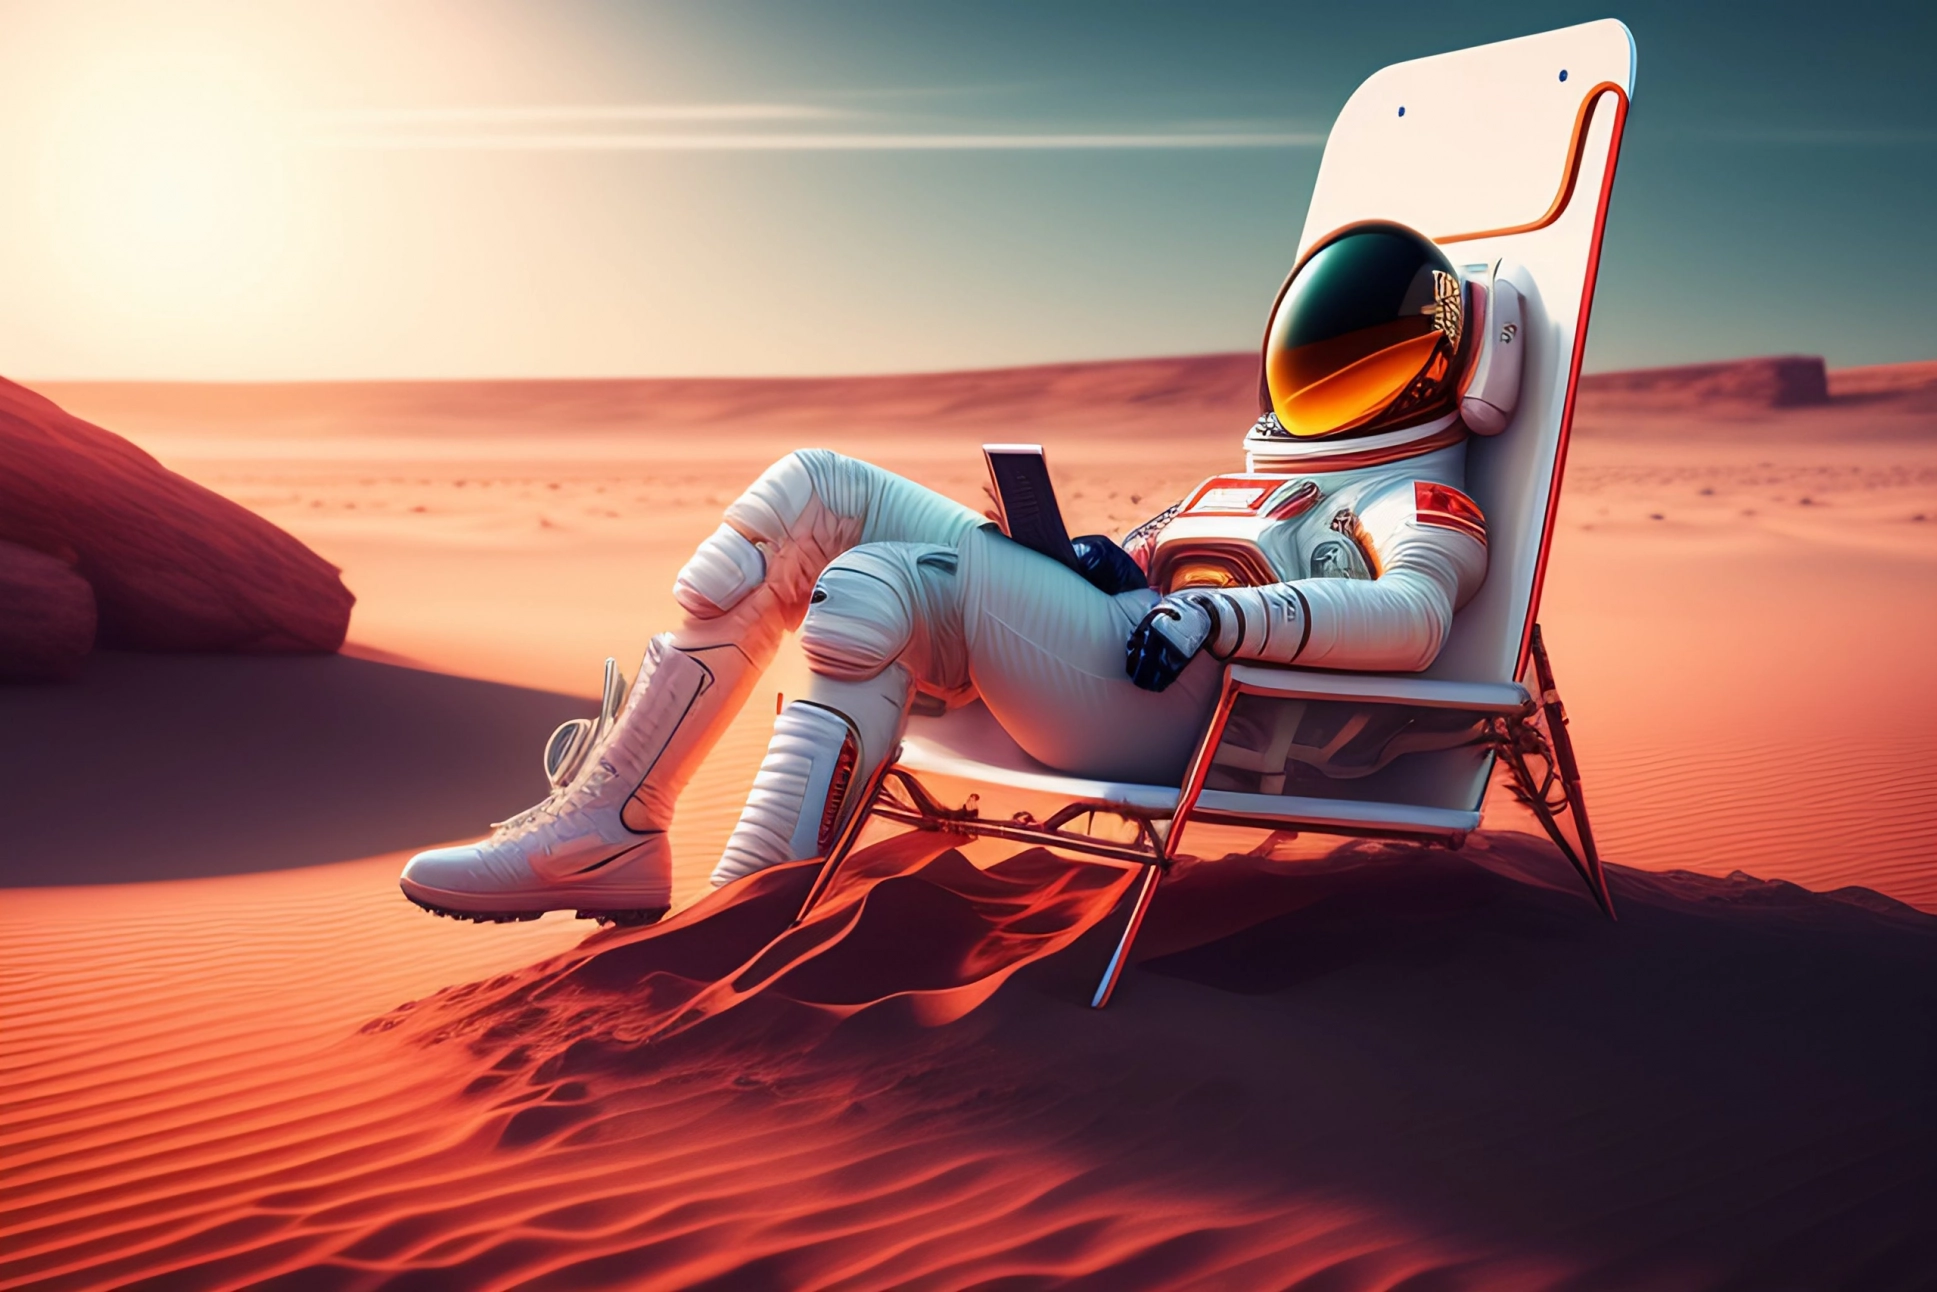 R23, der auf dem Mars in einem Strandkorb das Jahr 2023 plant